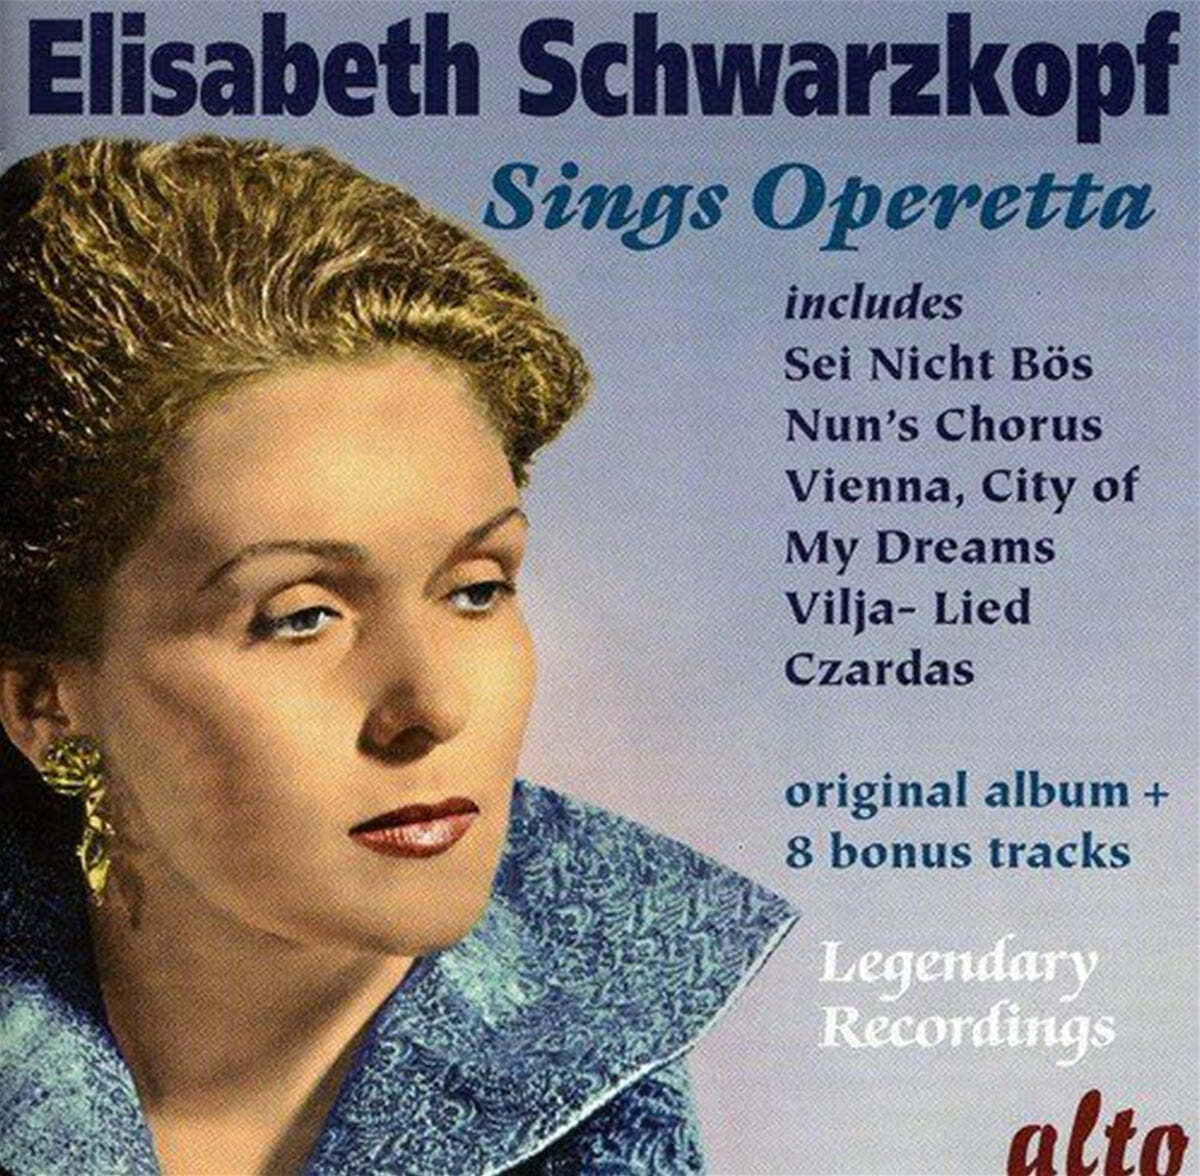 엘리자베스 슈바르츠코프가 부르는 오페레타 모음집 (Elisabeth Schwarzkopf Sings Operetta)